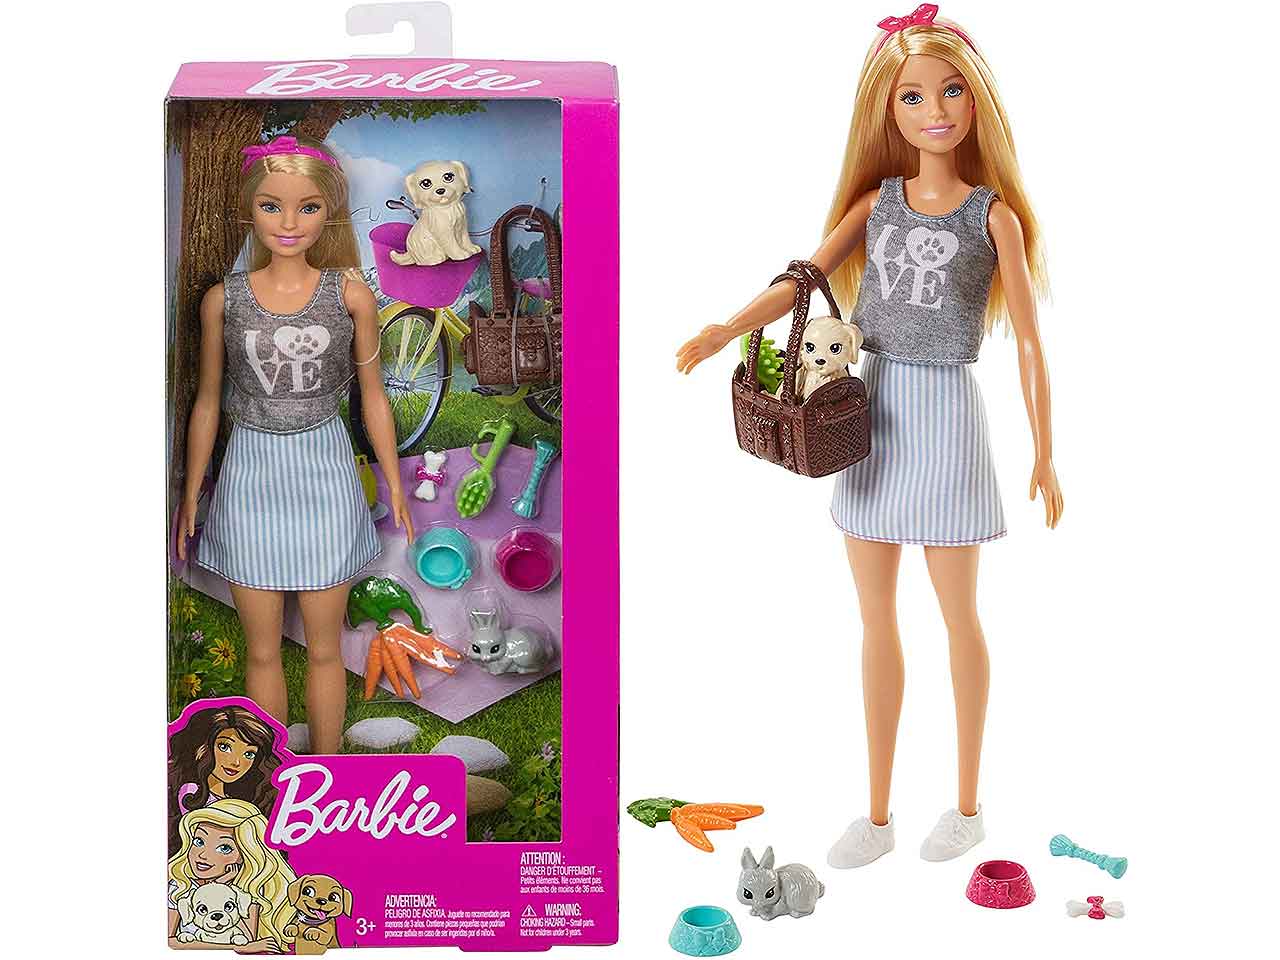 Barbie bambola cuccioli e accessori